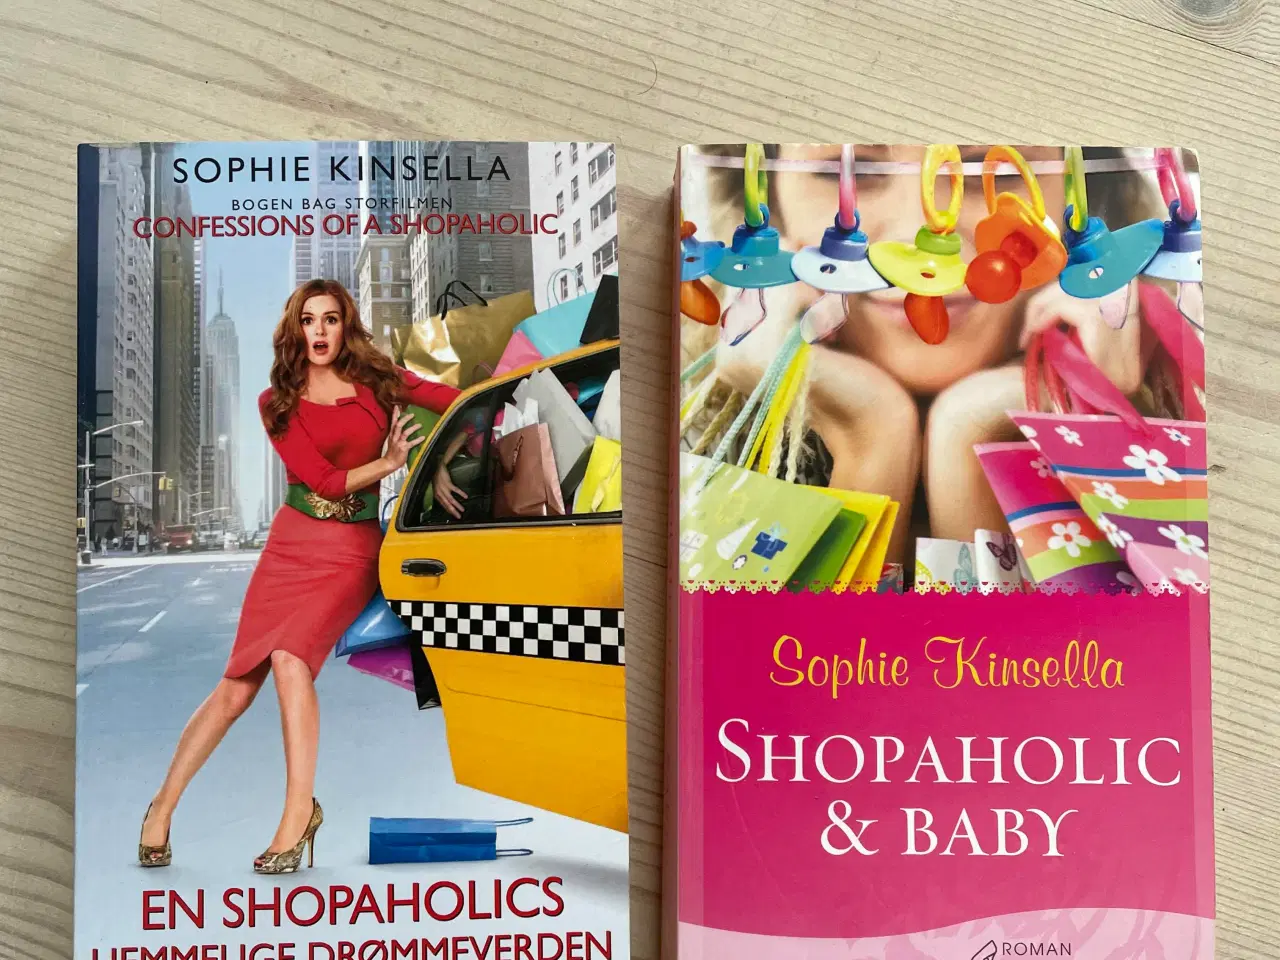 Billede 1 - Shopaholic bøger (på dansk)